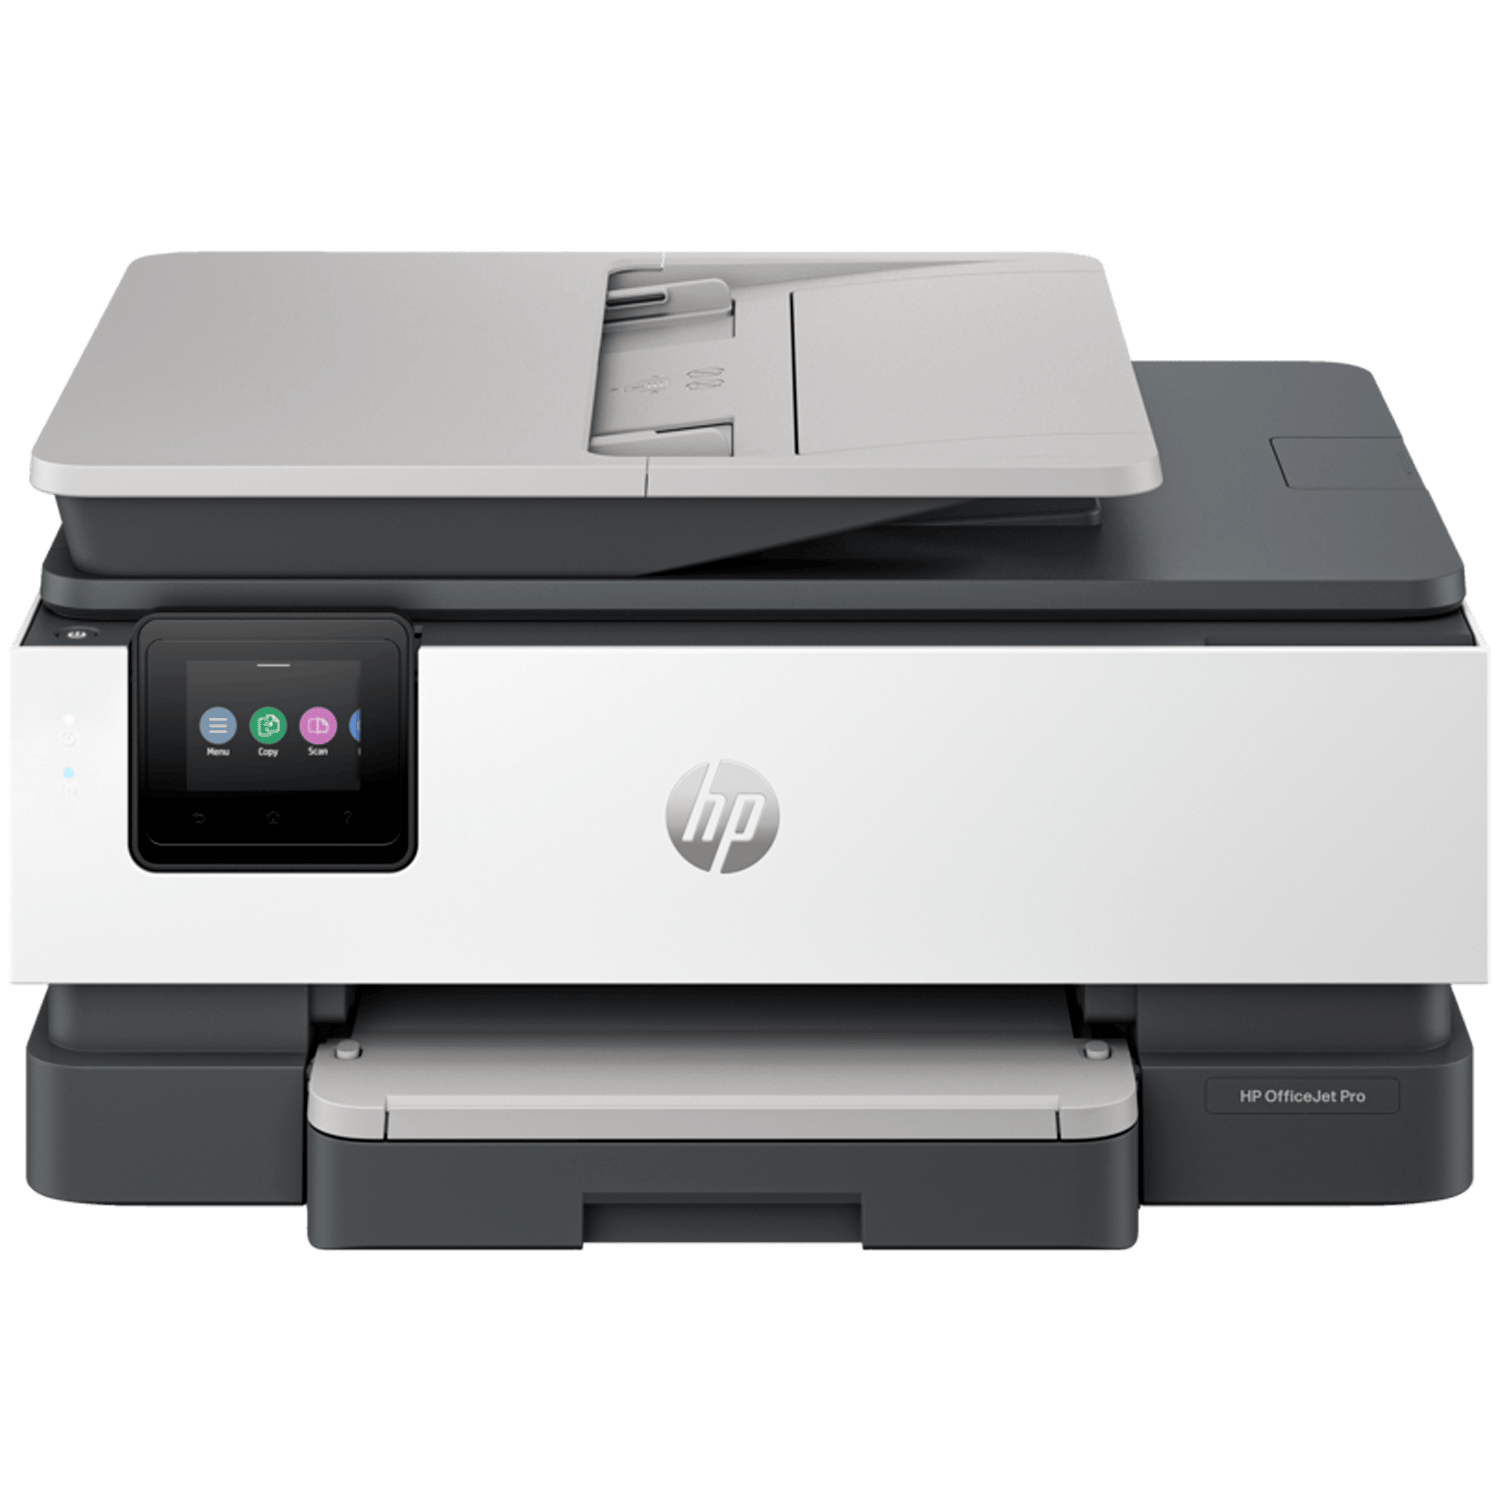 מדפסת משולבת צבעונית אלחוטית HP OfficeJet Pro 8133 AiO - צבע לבן שלוש שנות אחריות ע"י היבואן הרשמי